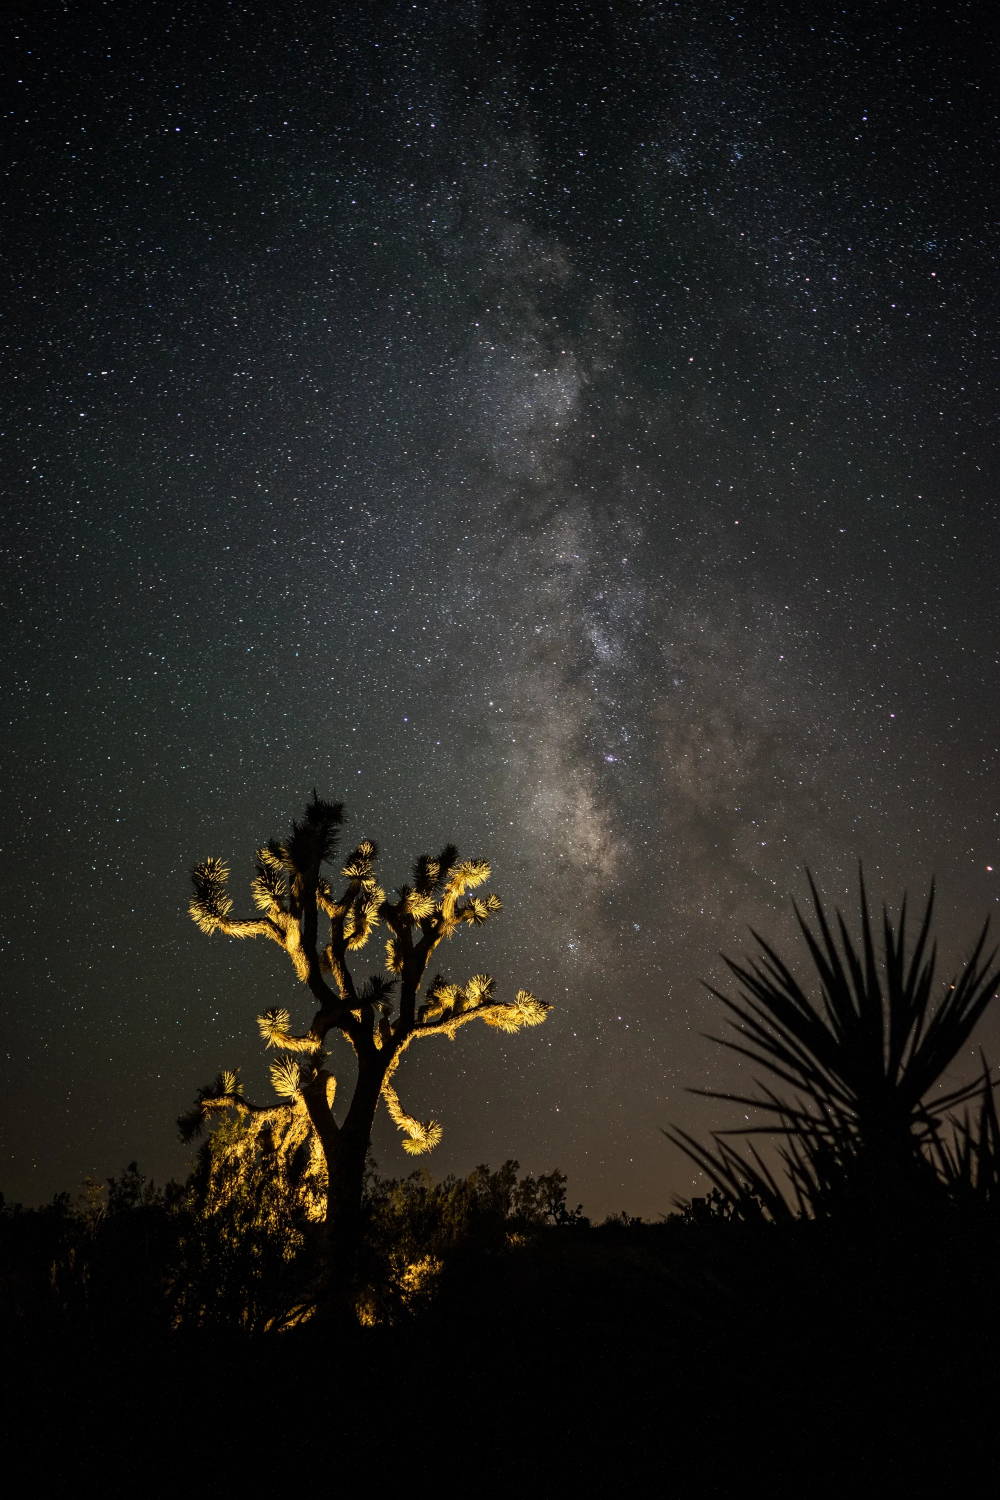 Desert plants illuminated at night under the stars